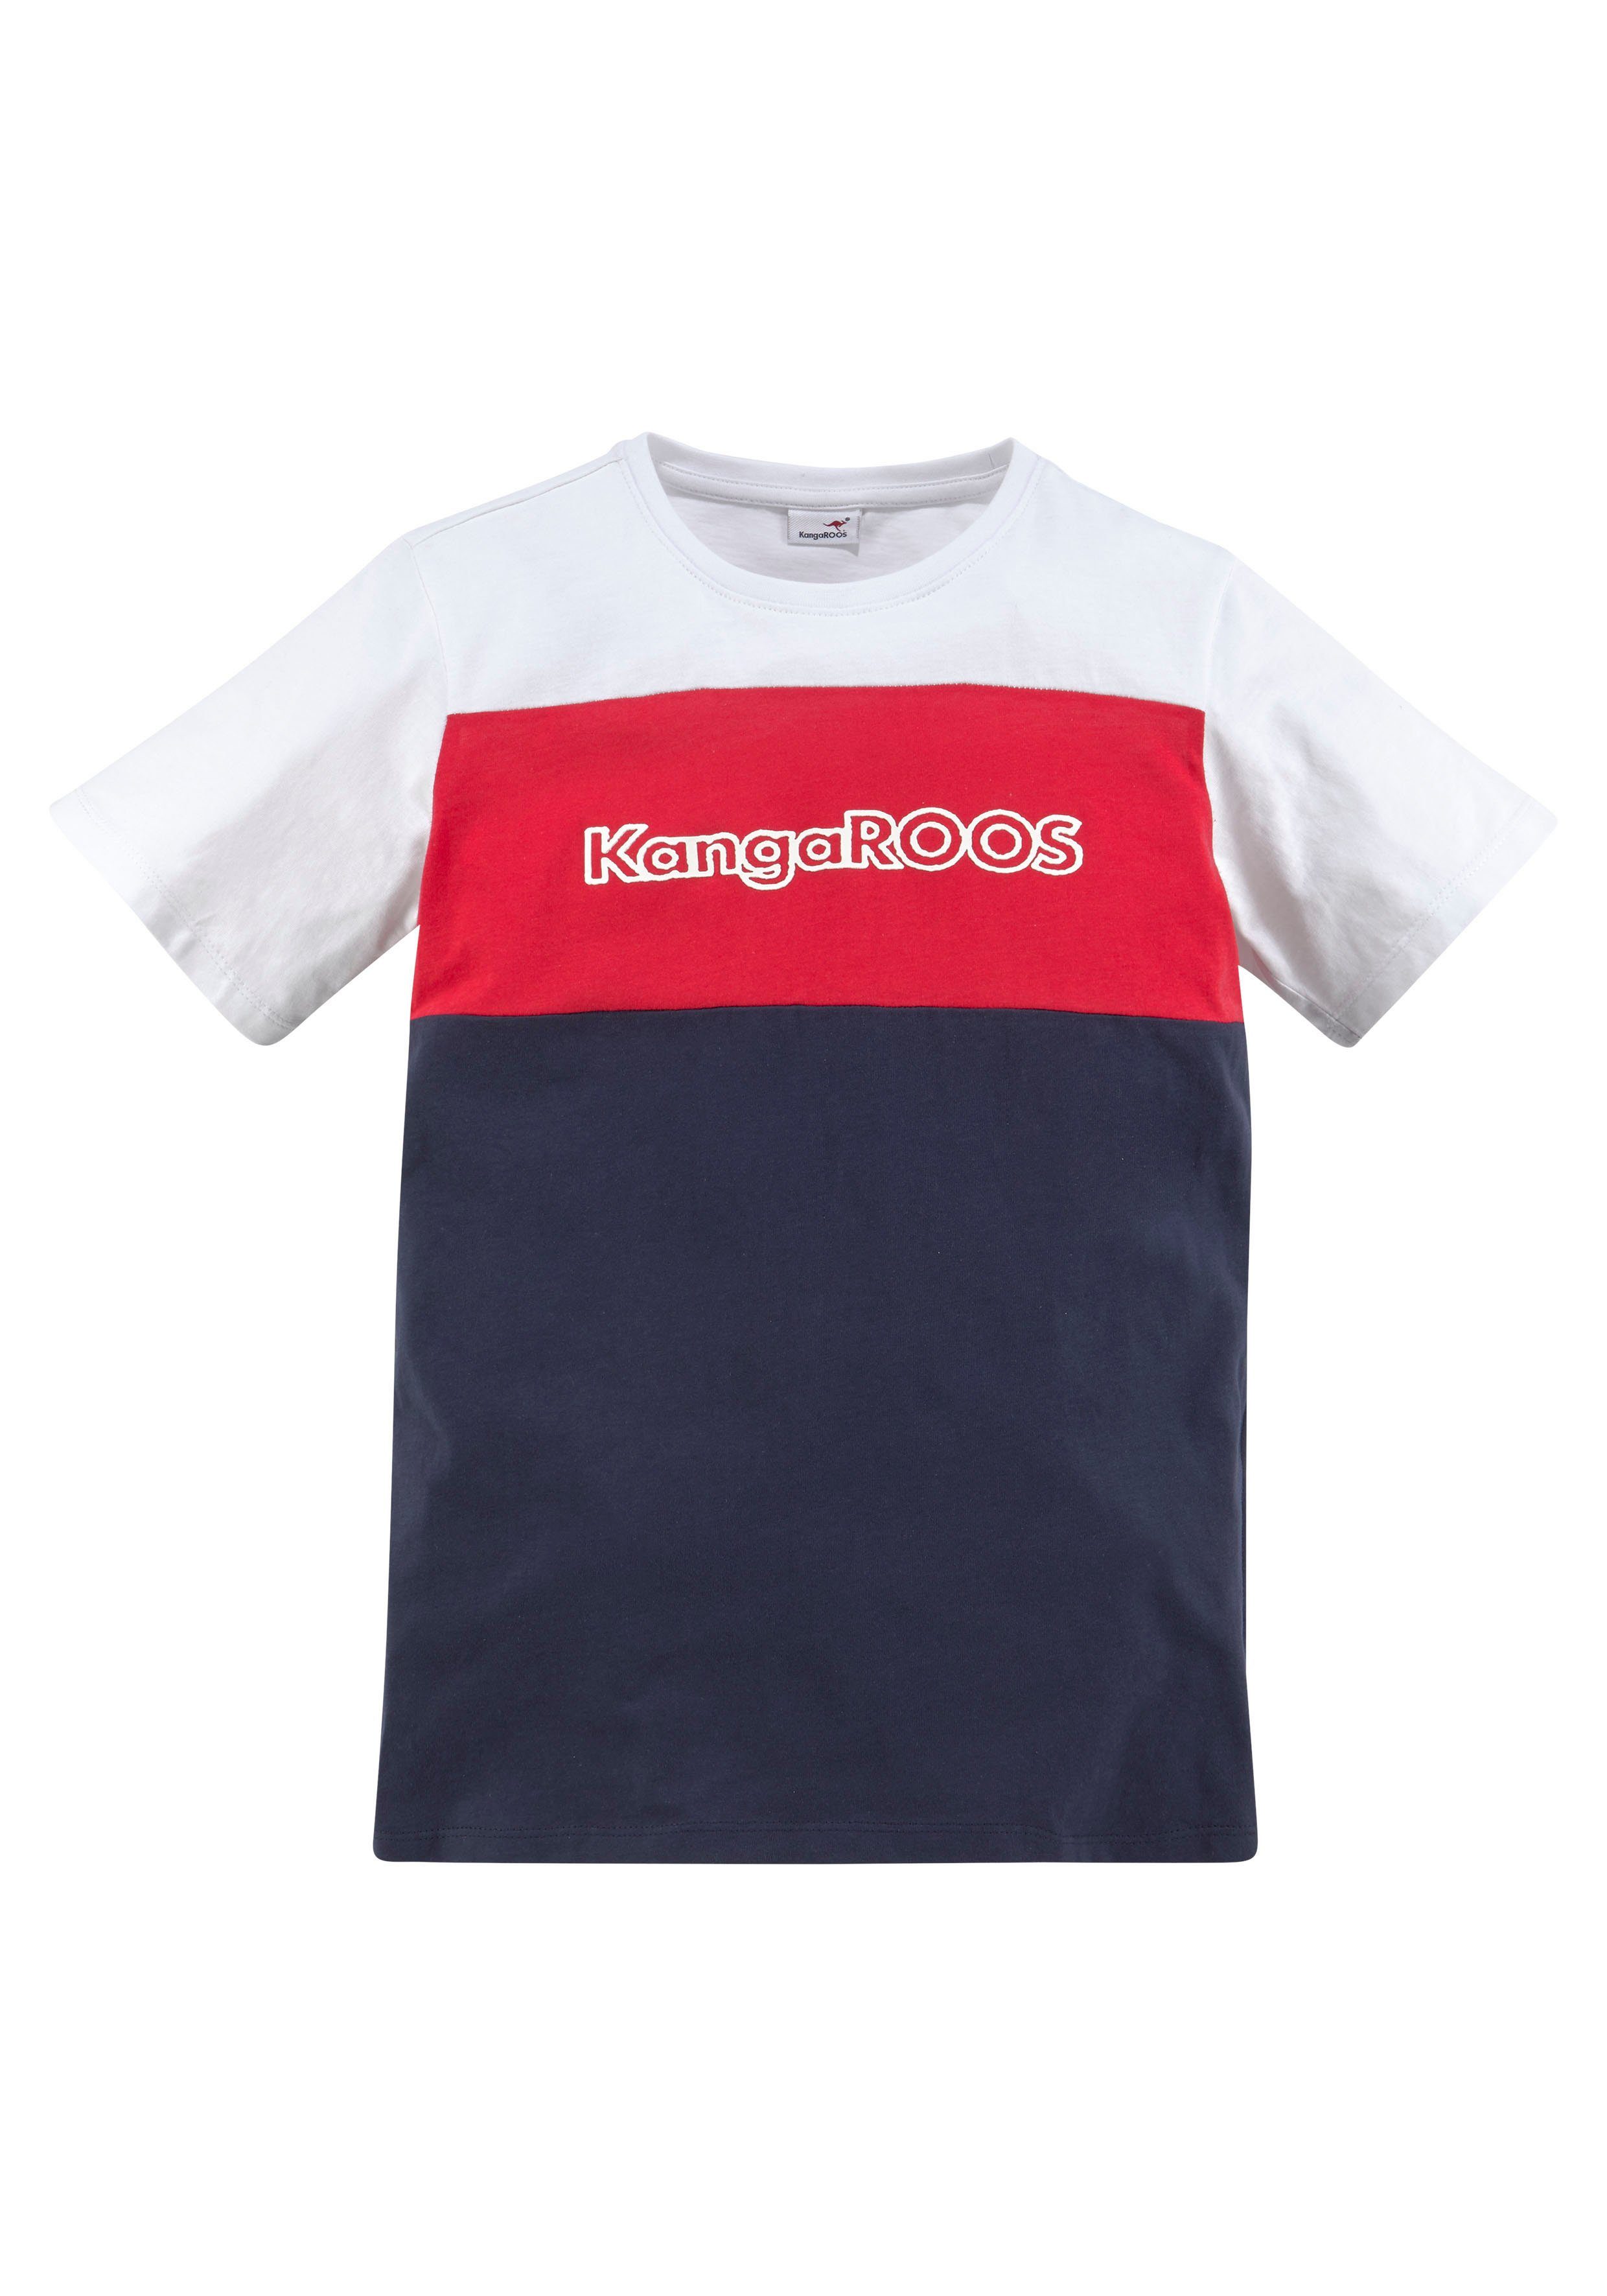 KangaROOS T-Shirt in Colorblockdesign